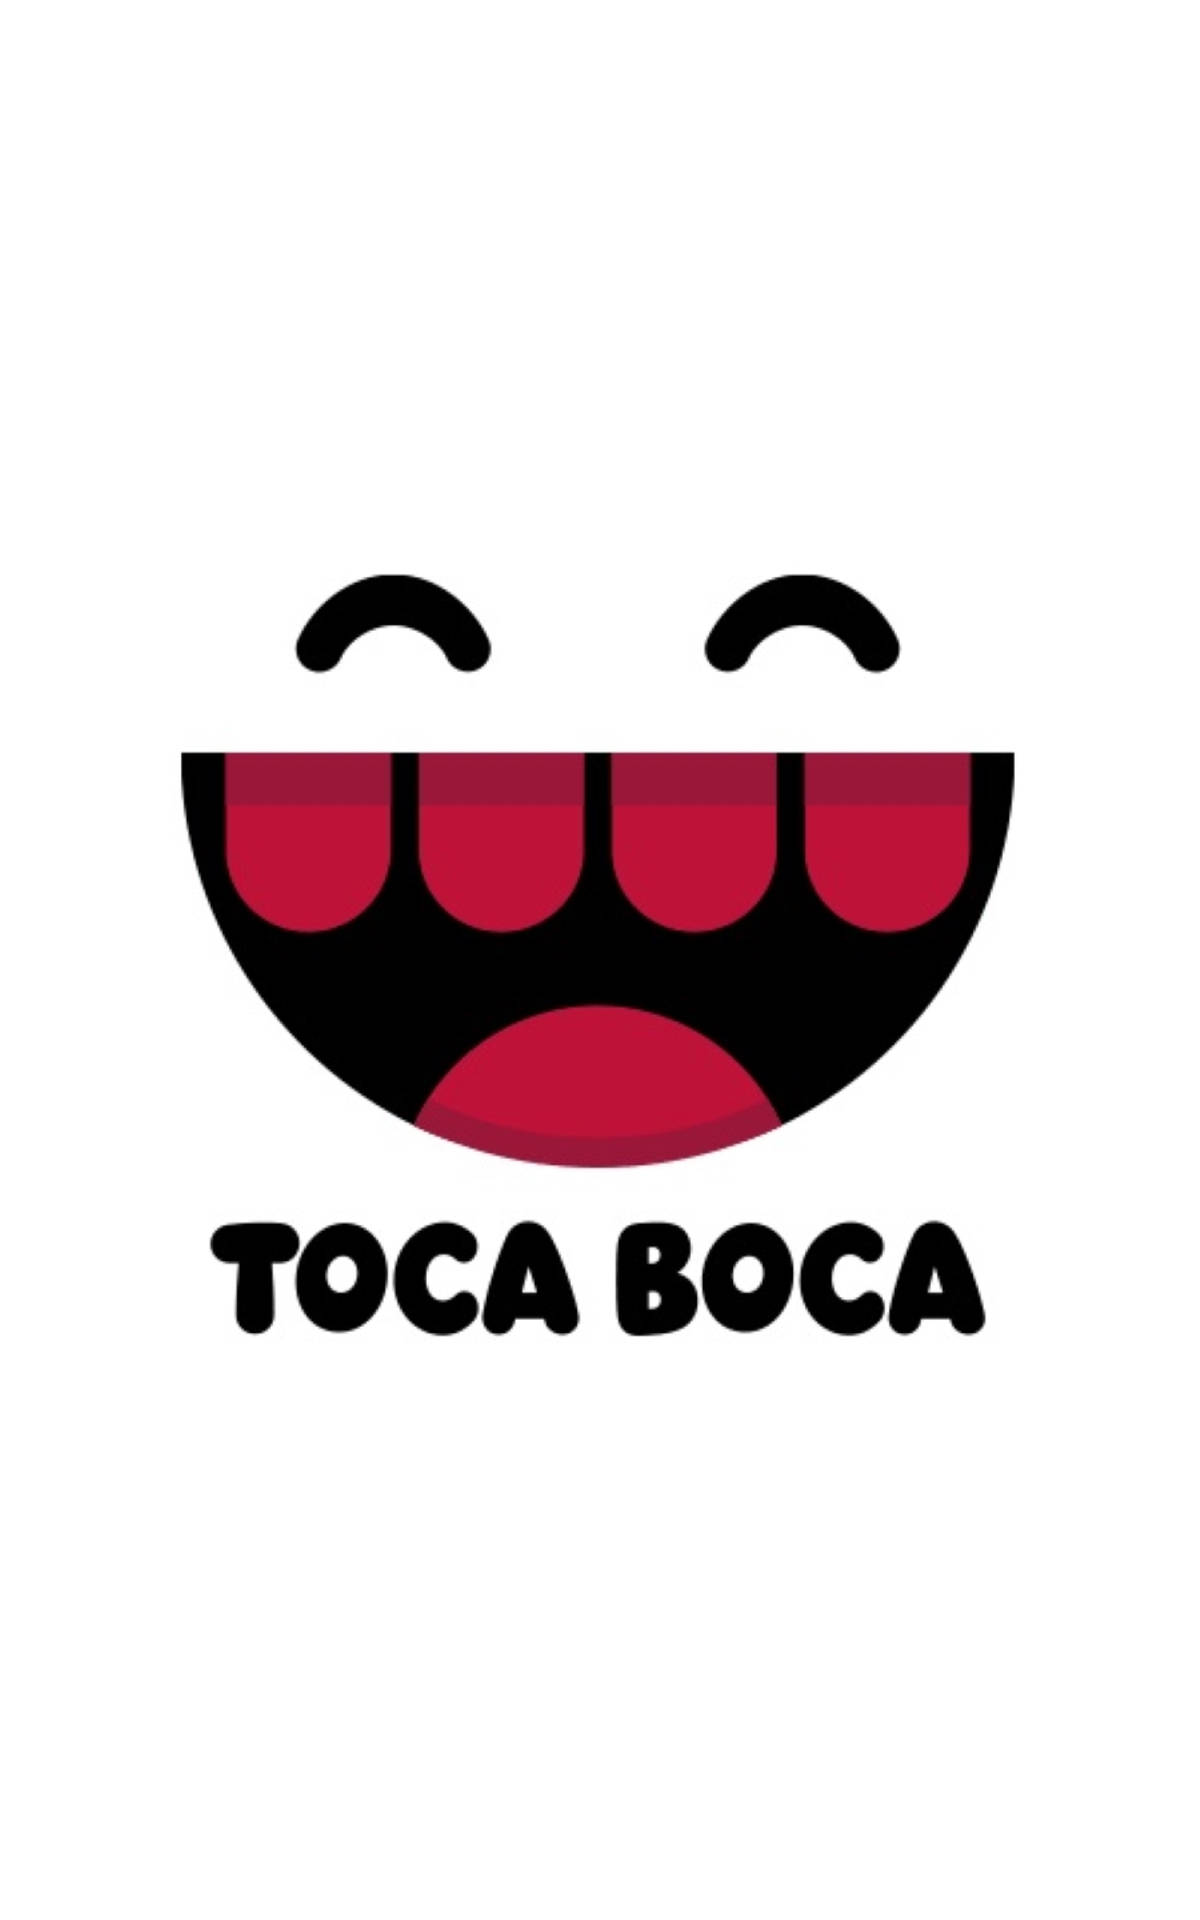 Toca Boca Logo Wallpaper